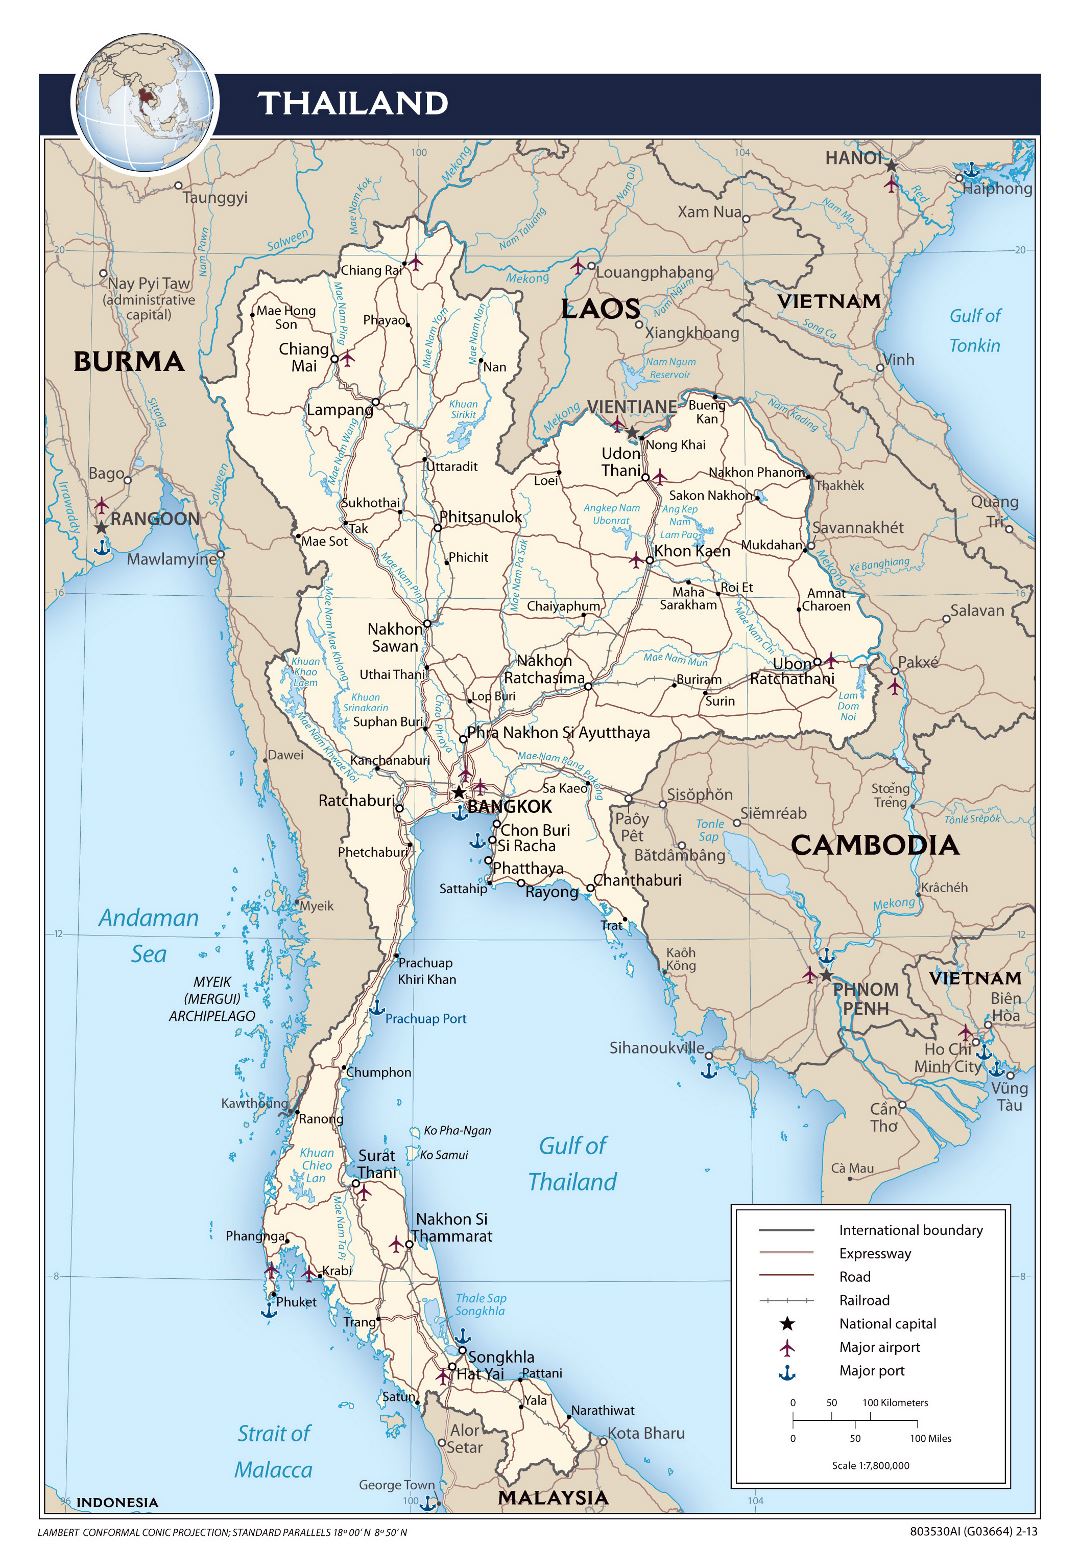 Grande mapa político de Tailandia con carreteras, ferrocarriles, principales ciudades, aeropuertos y puertos - 2013